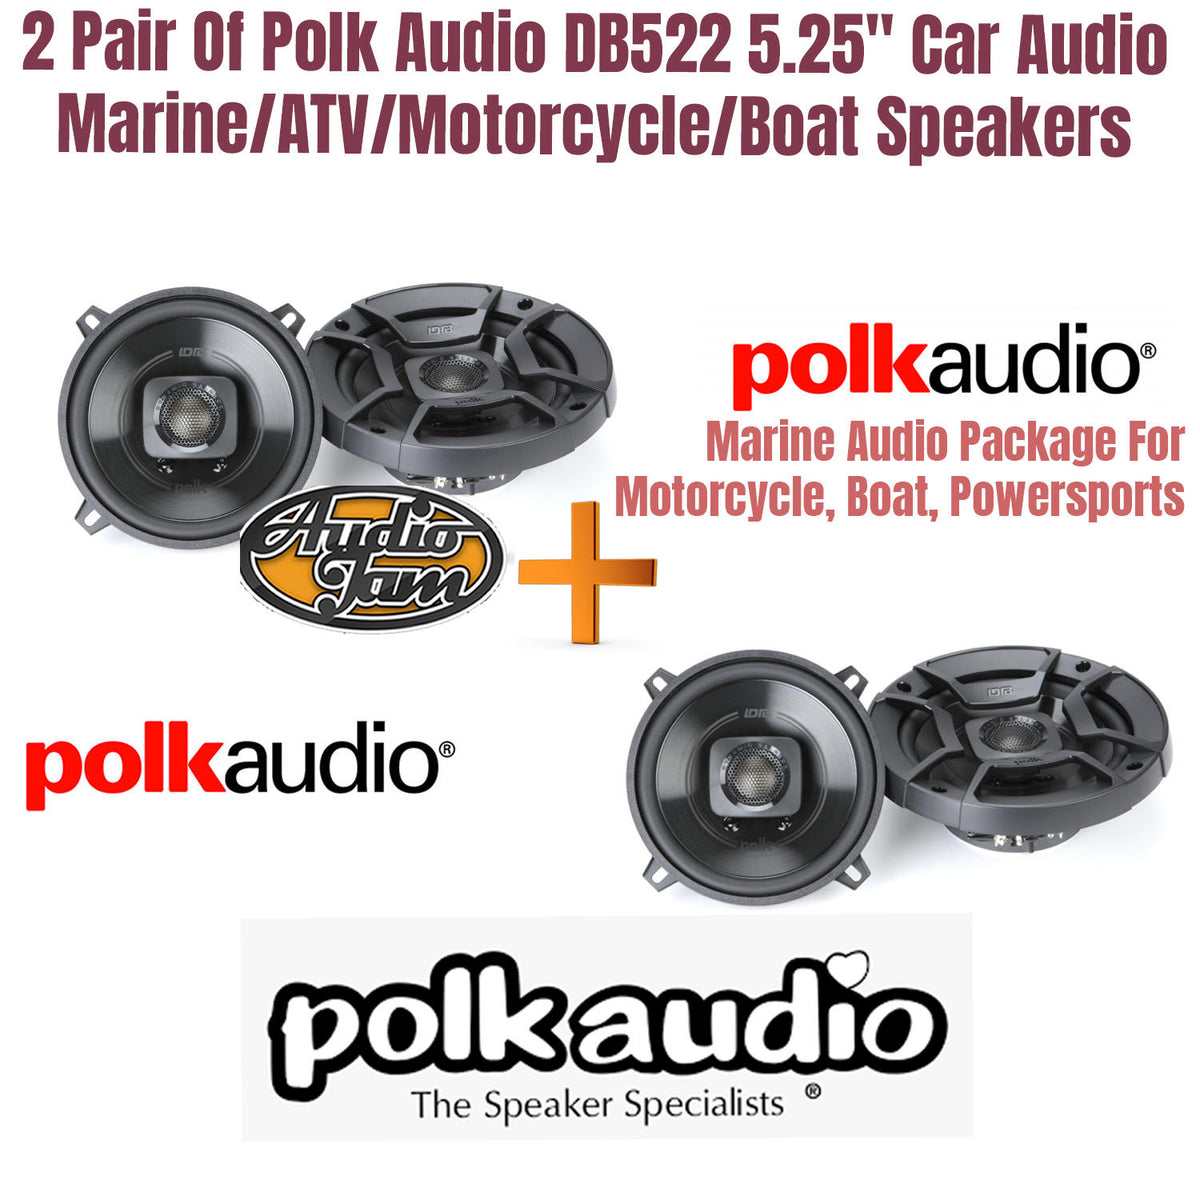 2 Pair Of Polk Audio DB522 5.25" Car Audio Marine/ATV/Motorcycle/Boat Speakers